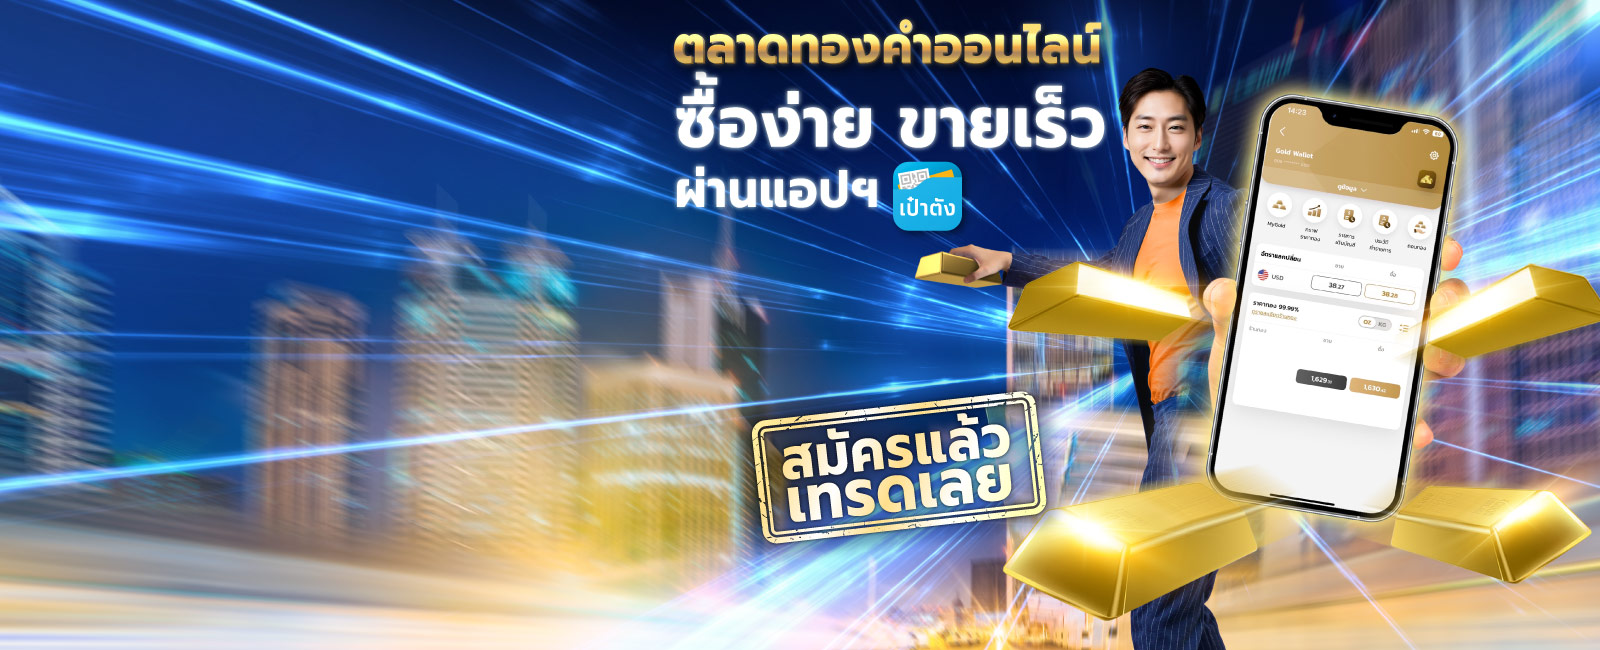 เทรดทอง ซื้อขายทองออนไลน์ กับ กรุงไทย desktop banner